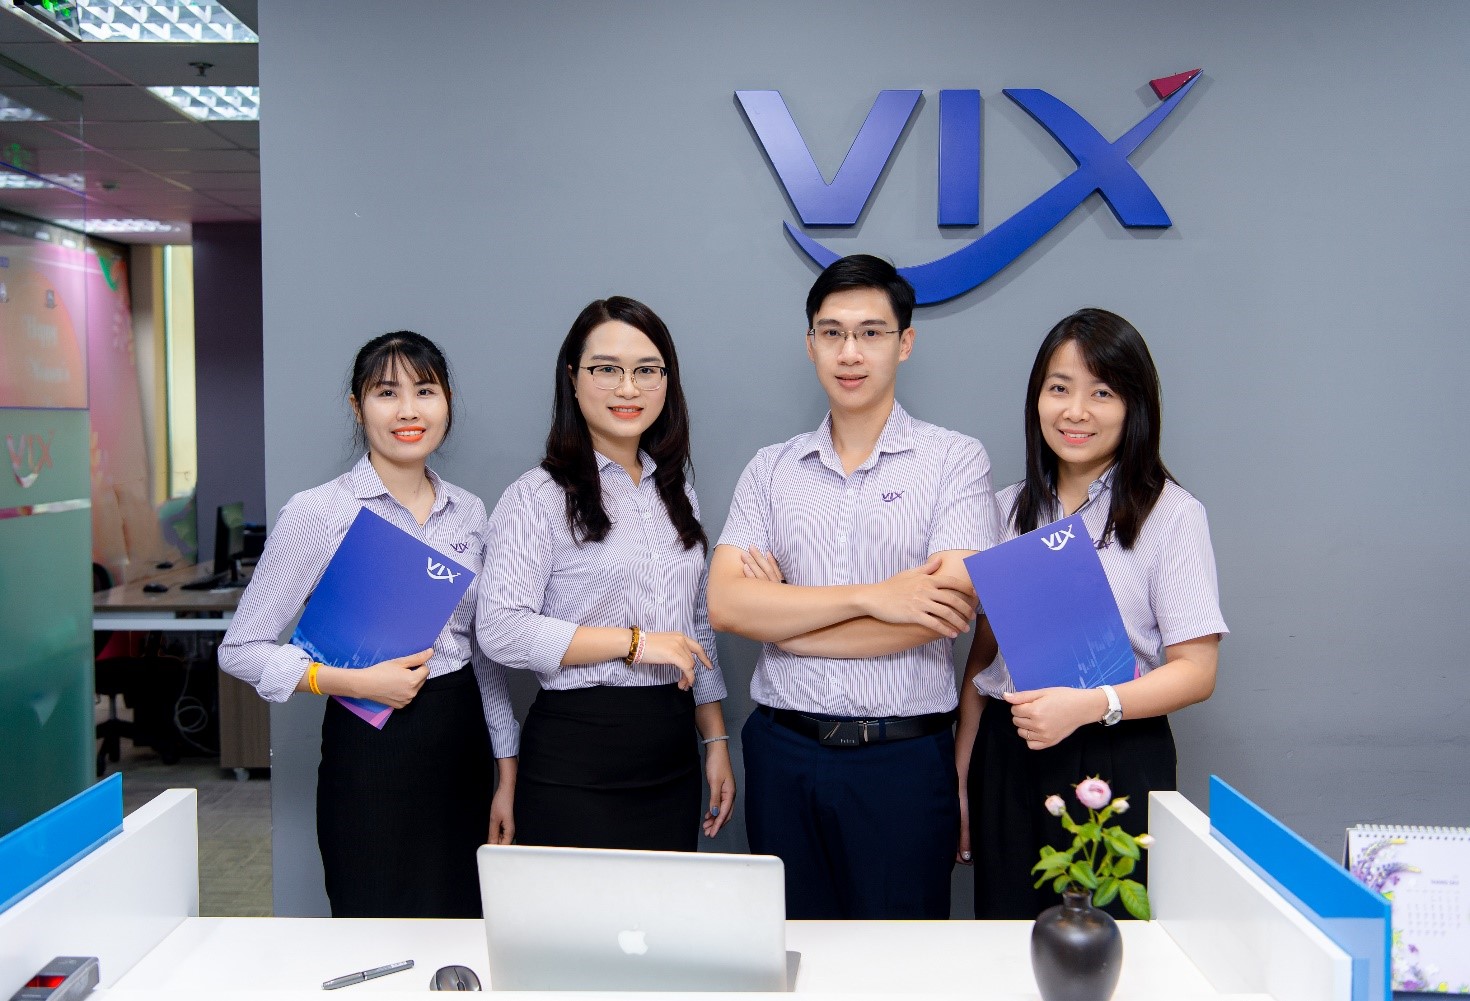 Chứng khoán VIX đạt 715 tỷ lợi nhuận trước thuế, tăng trưởng 76% và chính thức “cán đích” chỉ tiêu chỉ sau 6 tháng | Vietstock